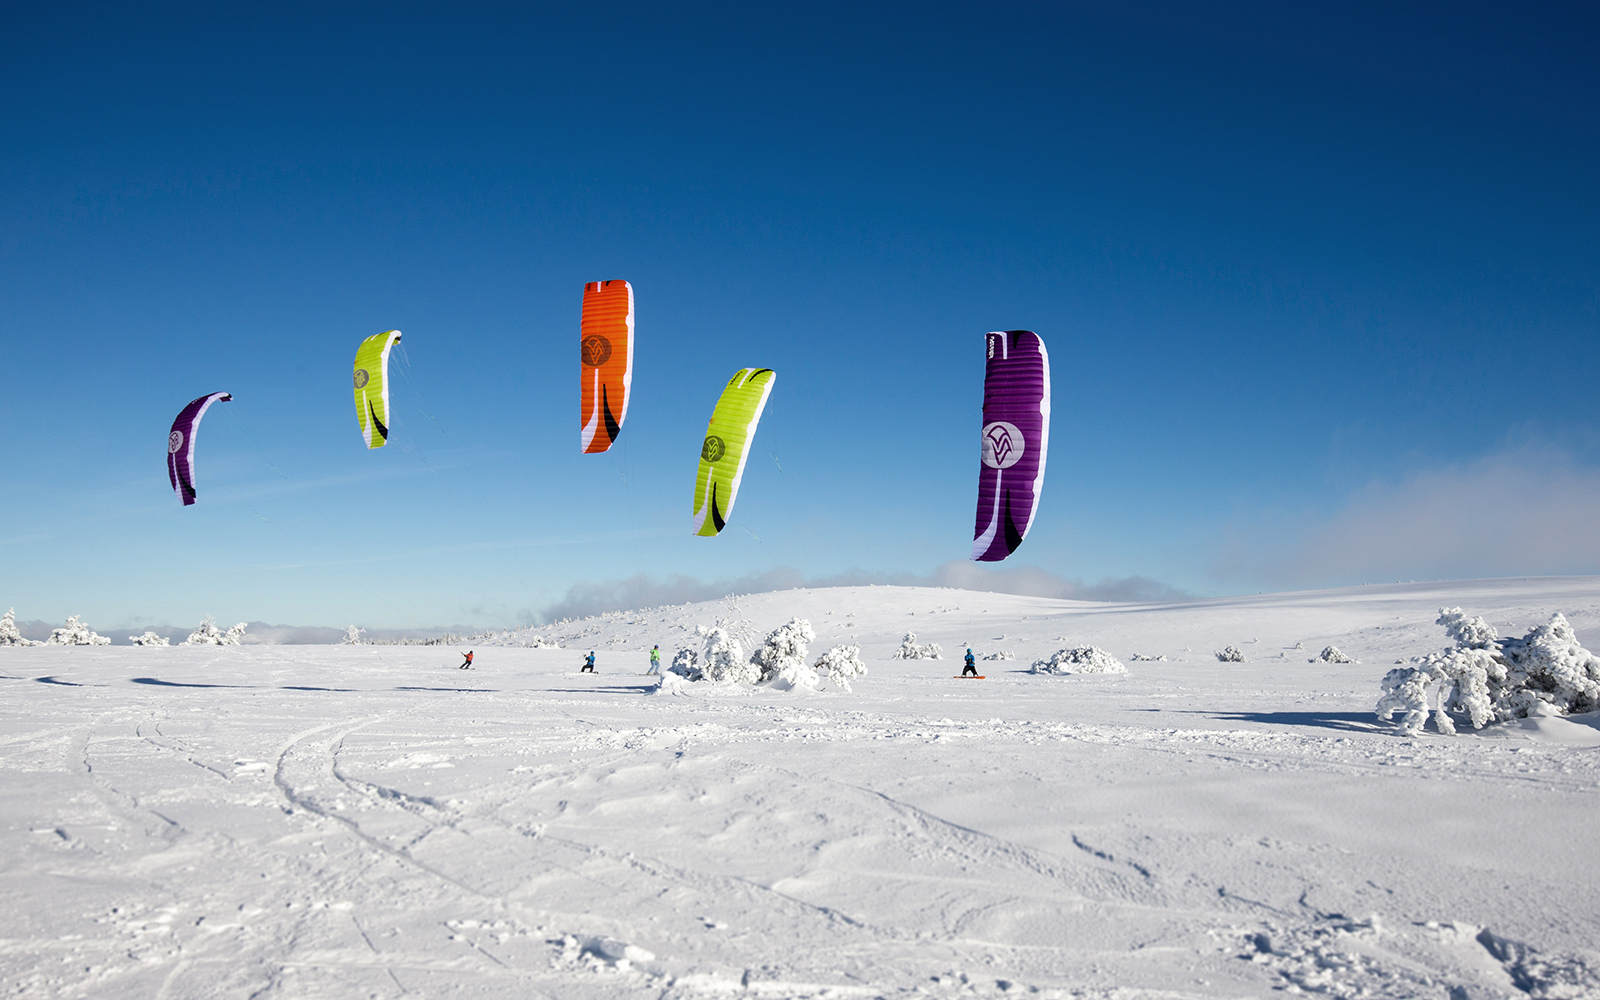 SPEED5 Snow four Kites Race